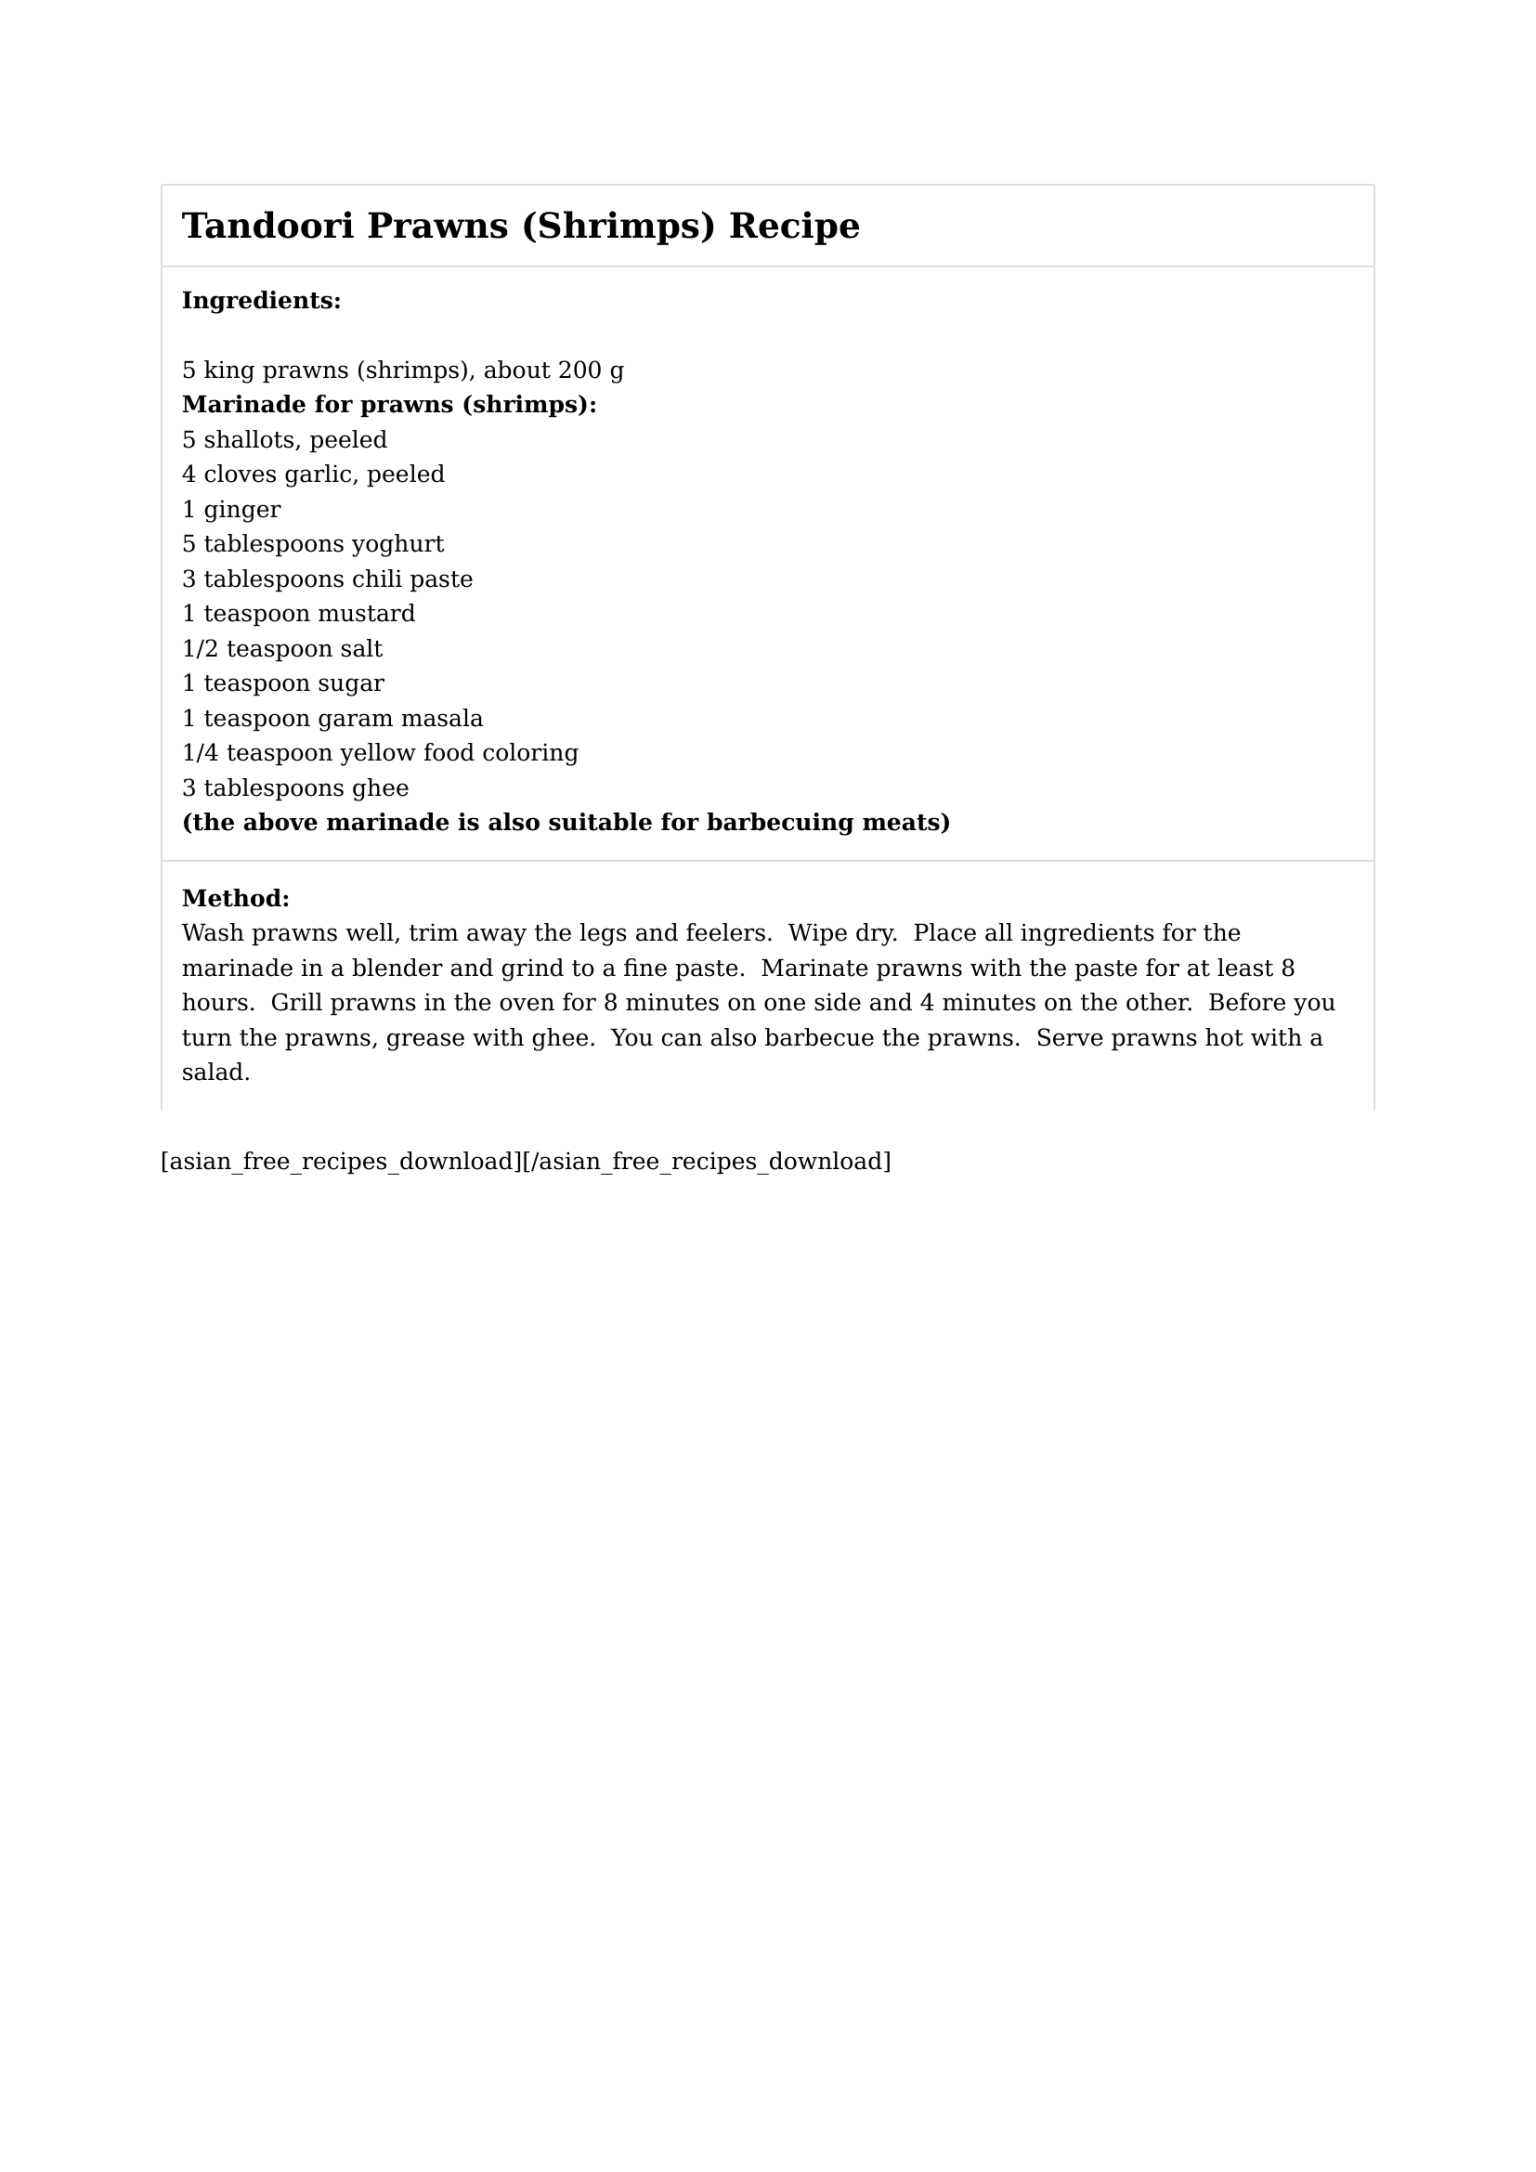 Tandoori Prawns (Shrimps) Recipe